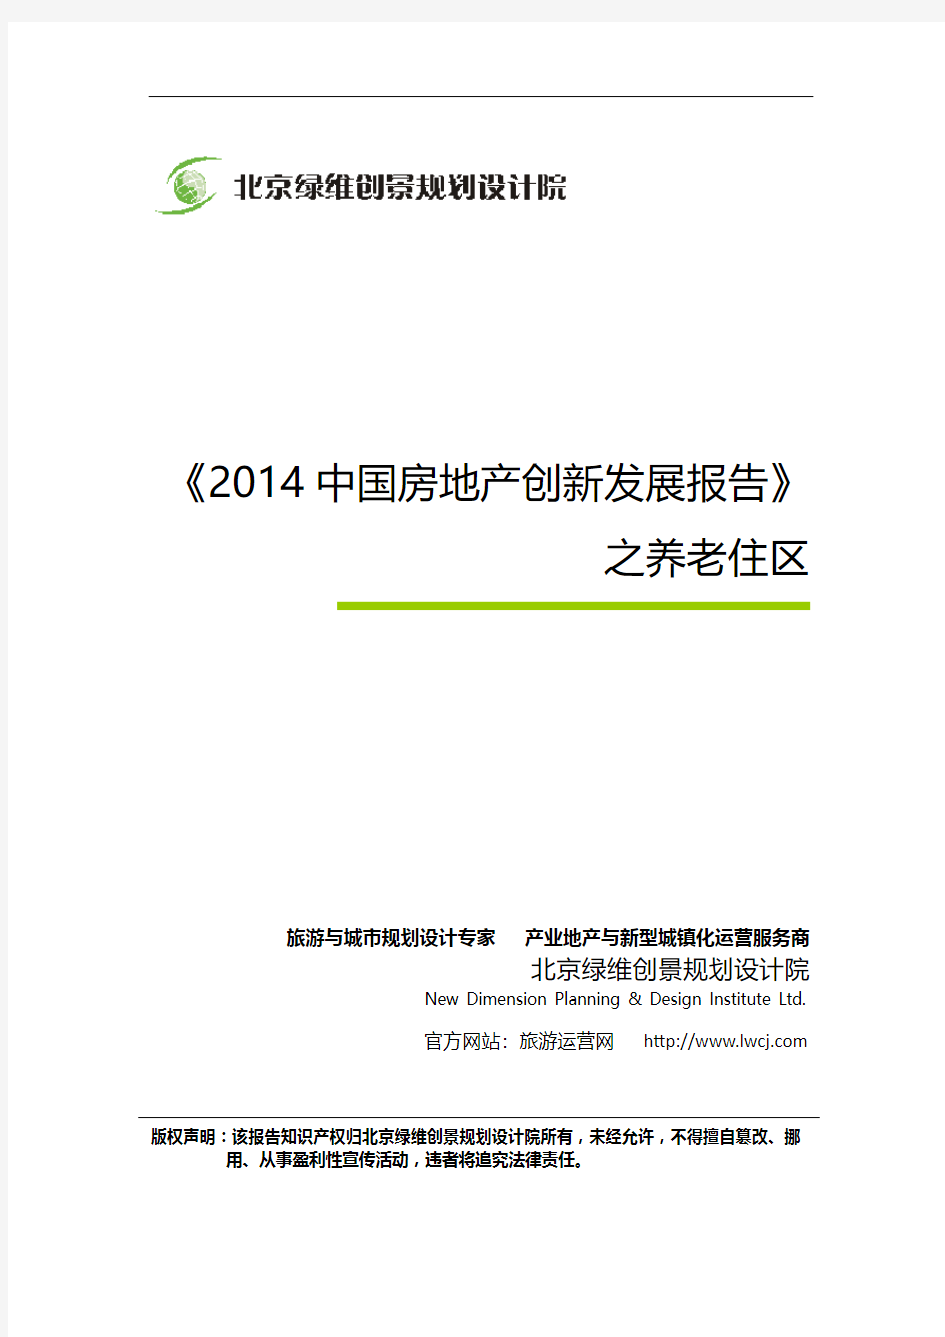 《2014中国房地产创新发展报告》之养老住区-绿维创景